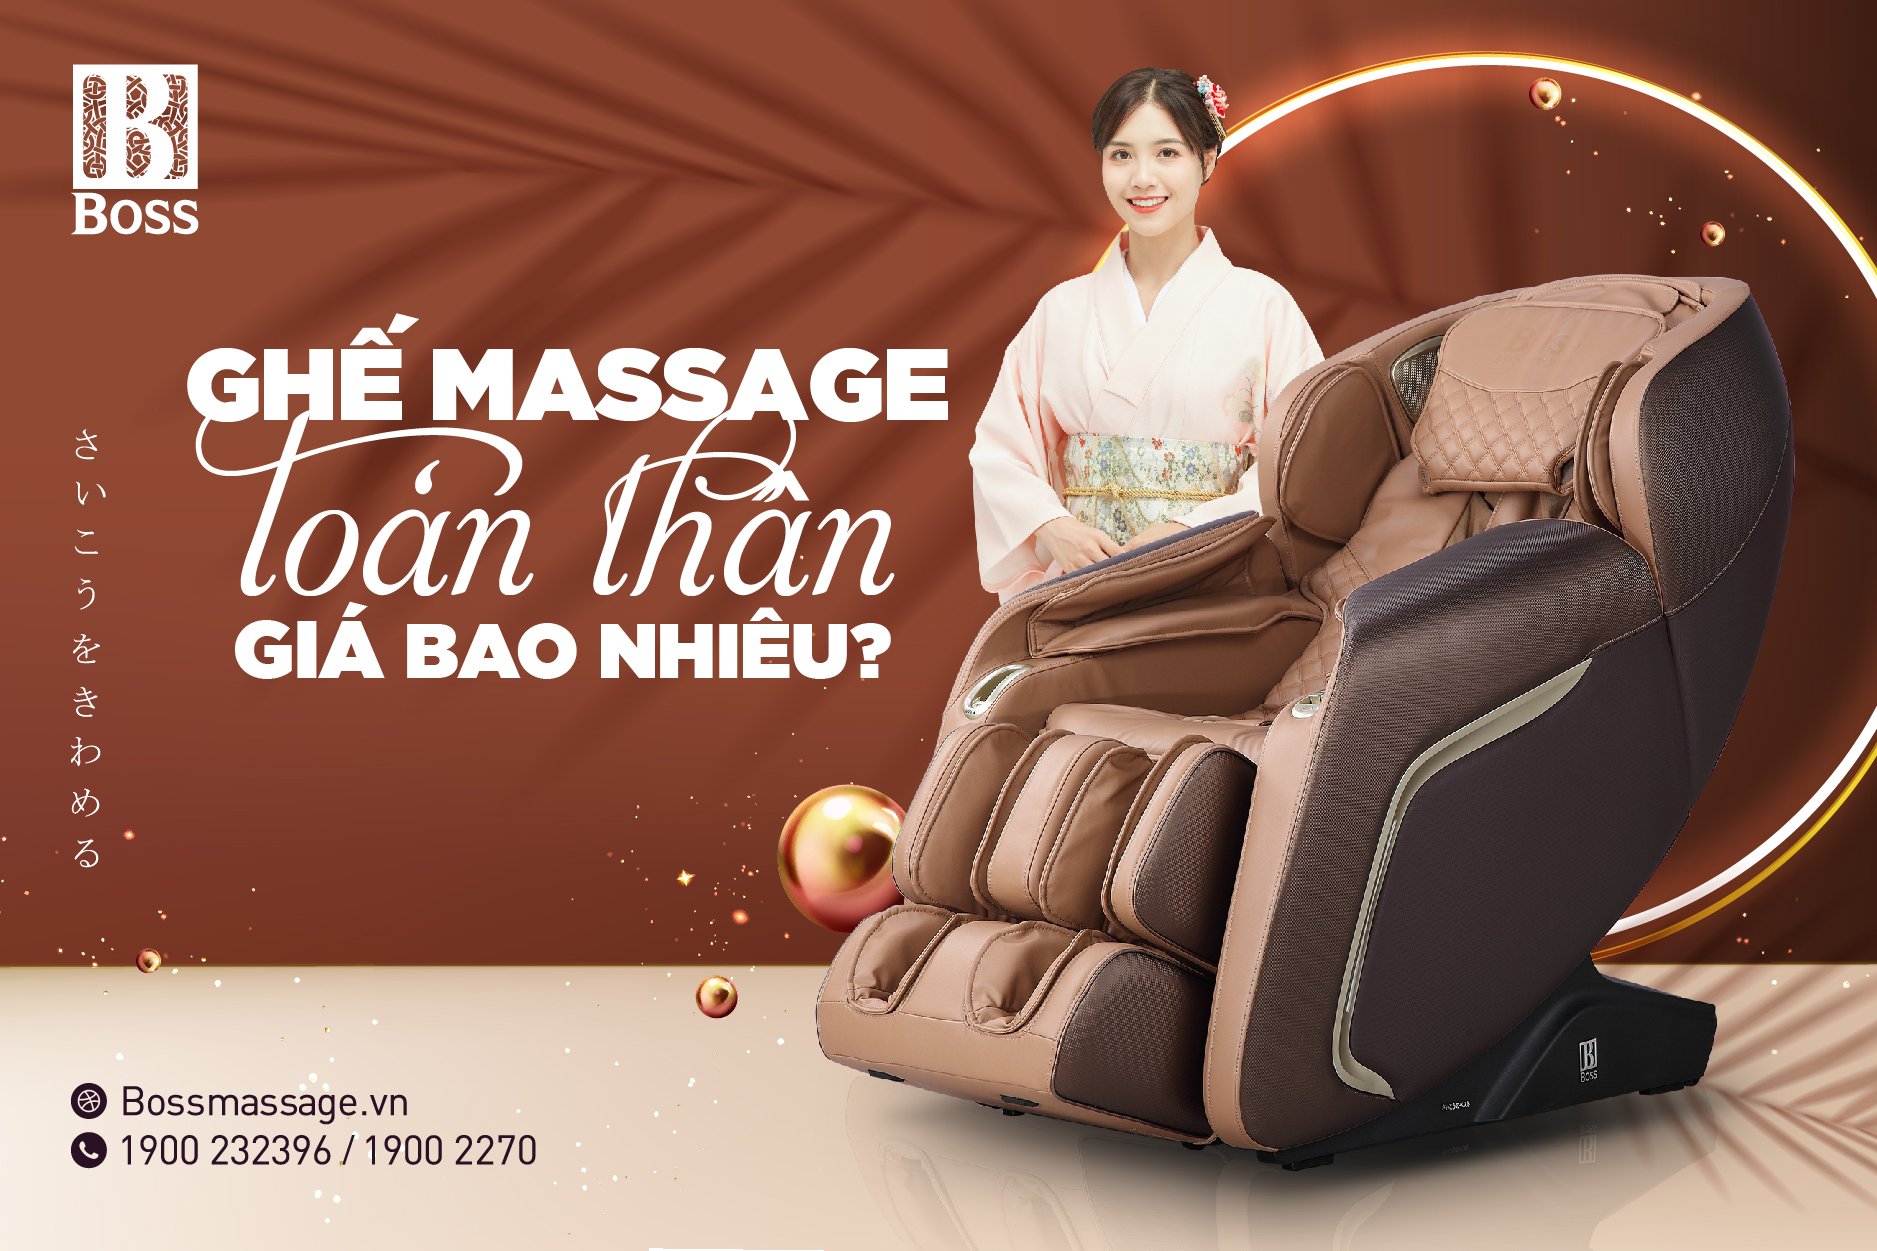 ghế massage toàn thân giá bao nhiêu?